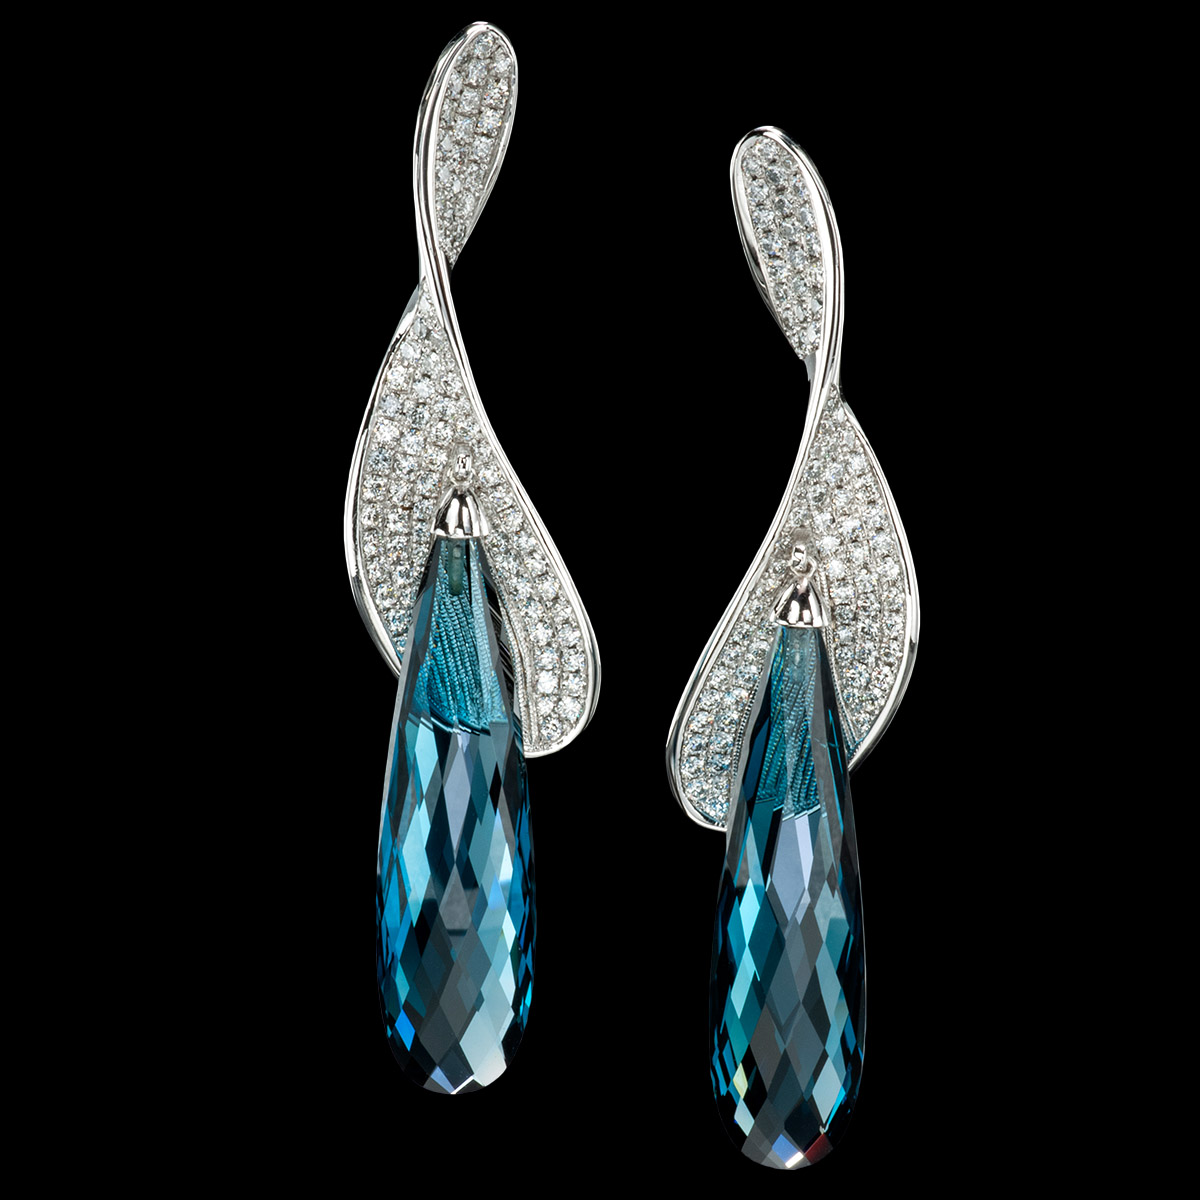 Vortice blue topaz earrings